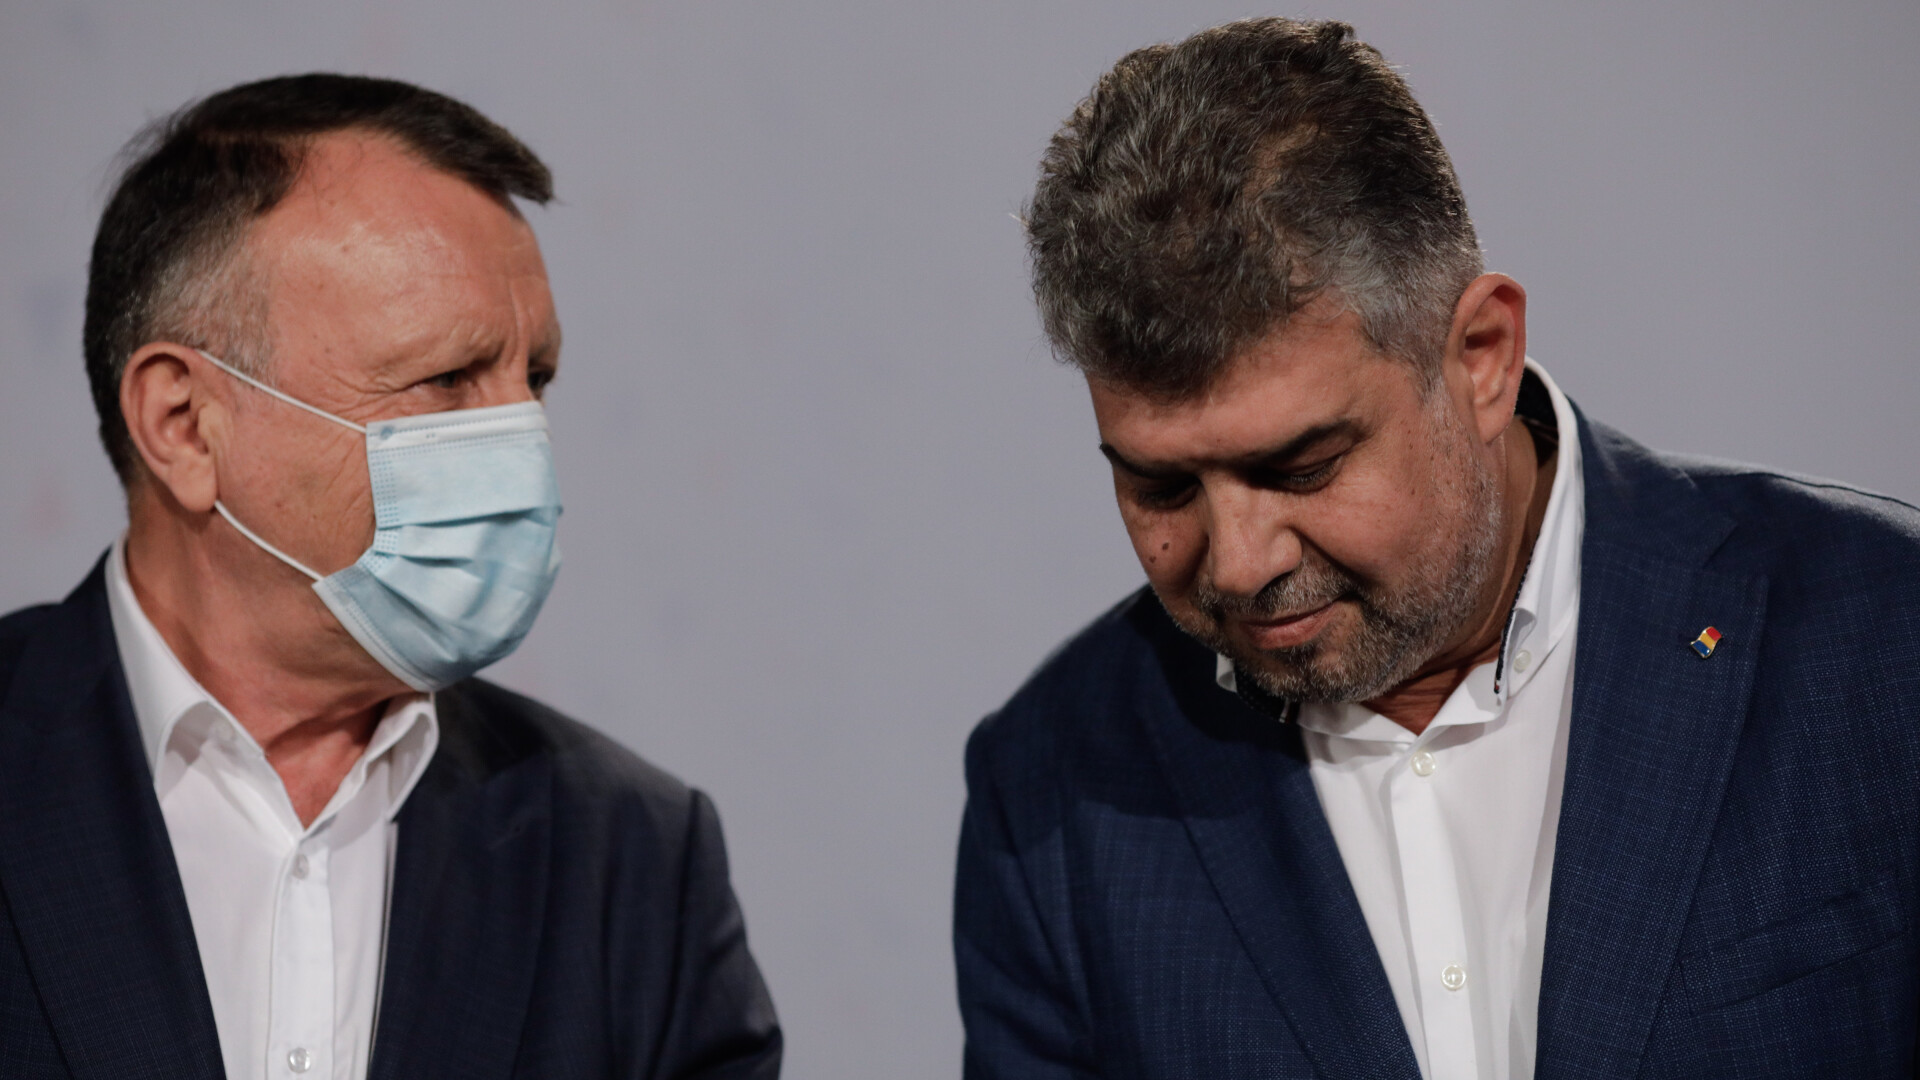 Preşedintele PSD, Marcel Ciolacu, spune că Paul Stănescu este infectat cu Covid-19